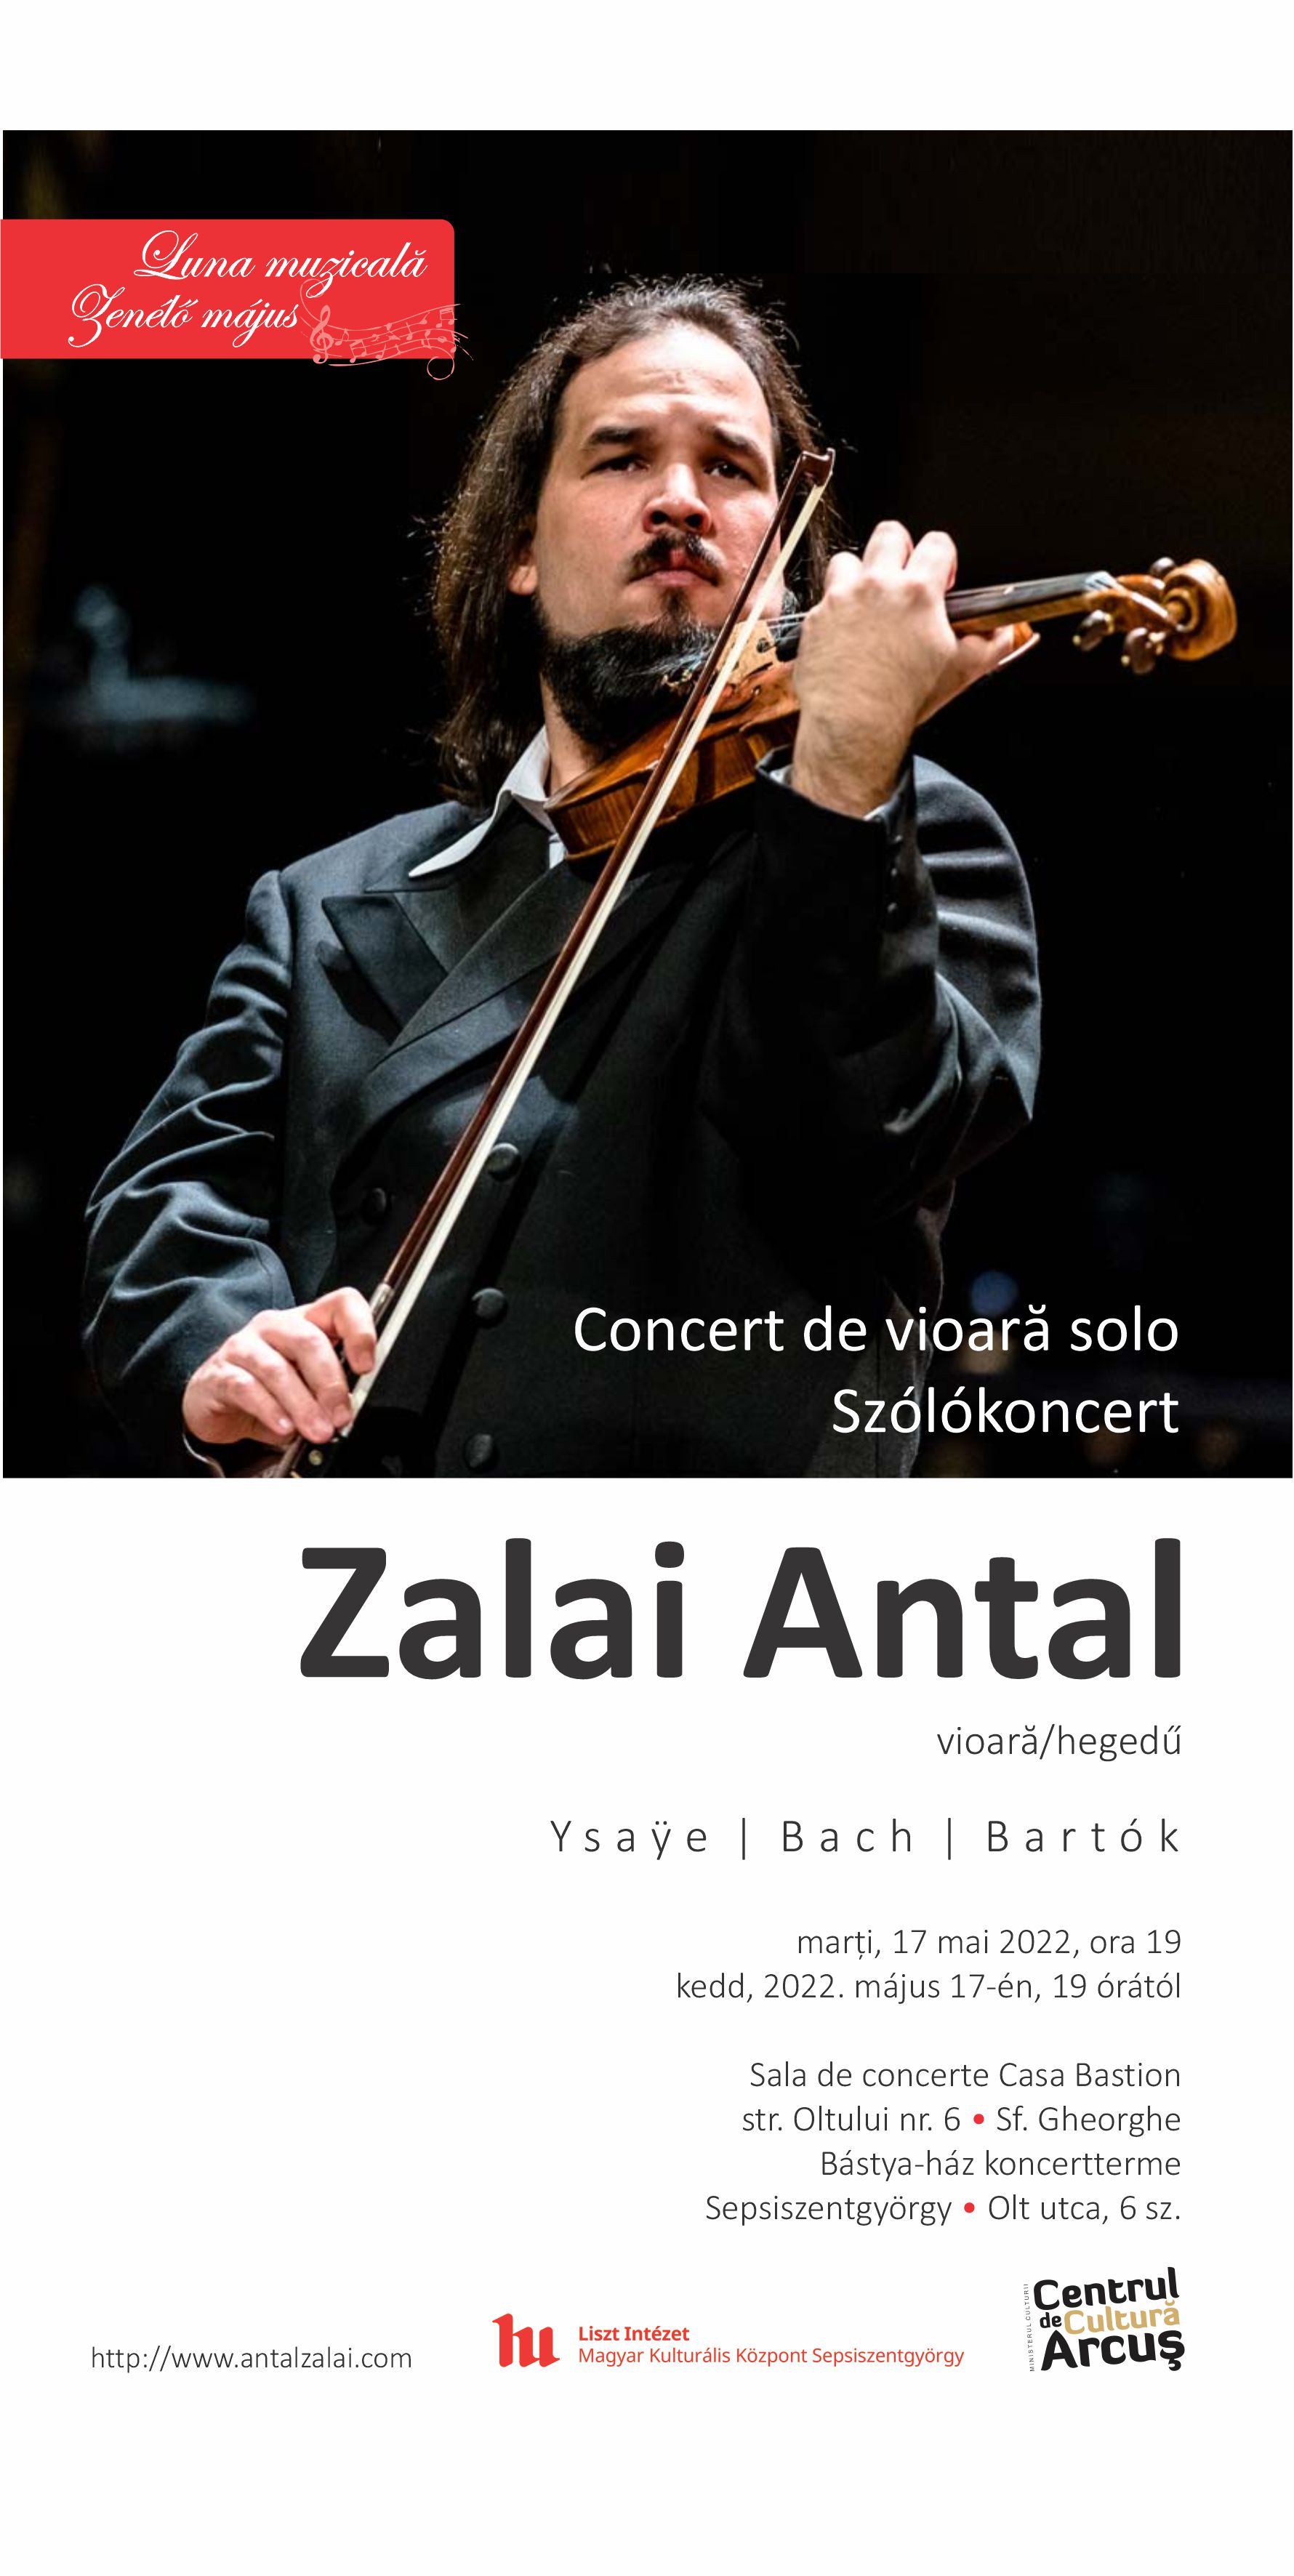 Concert de vioară solo - Zalai Antal 